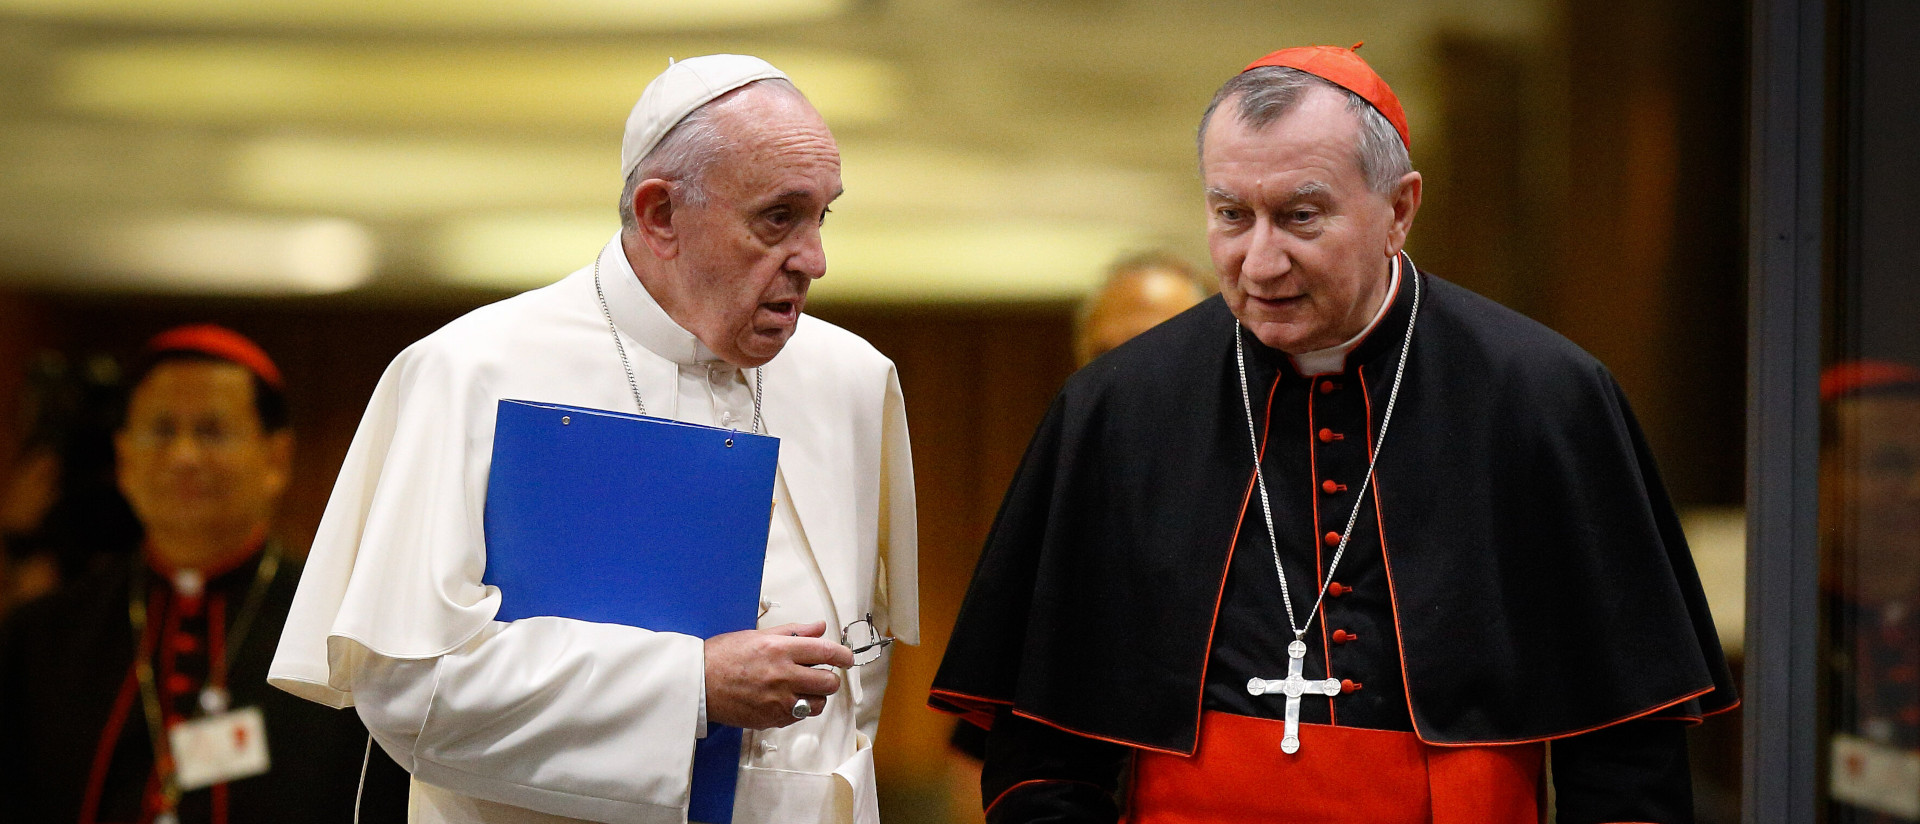 Papst Franziskus im Gespräch mit Kardinalstaatssekretär Pietro Parolin am 5. Oktober 2015 im Vatikan.